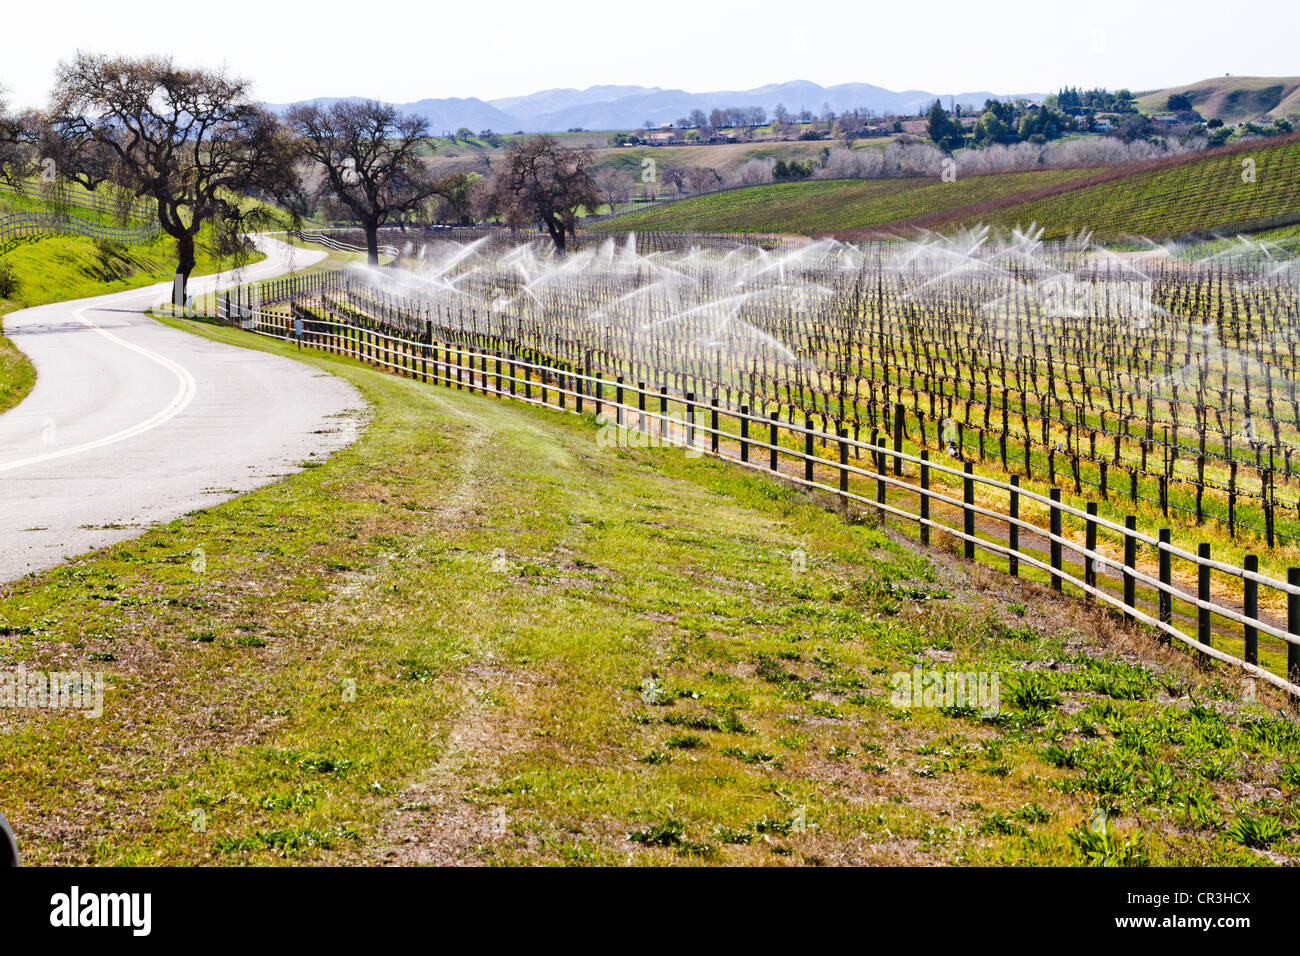 Délayage de vigne dans "Santa Ynez valley" en Californie Banque D'Images